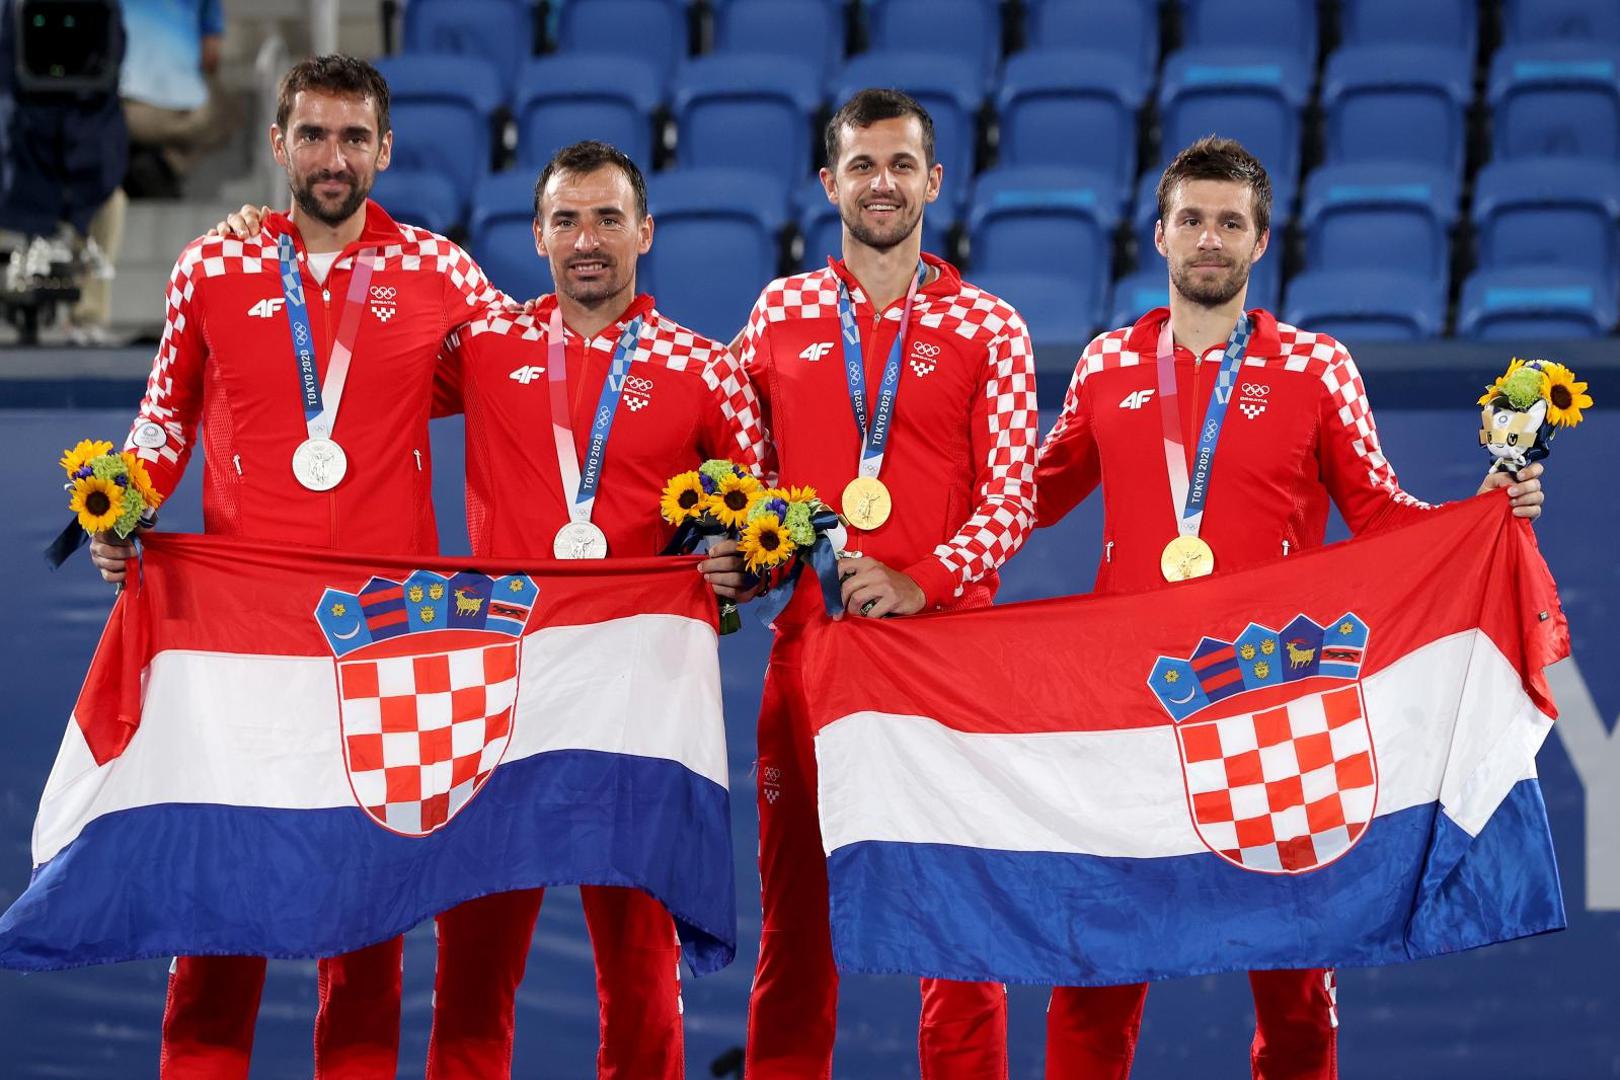 Ipak, Hrvatska je osvojila osam medalja. Osam sjajnih odličja s ovih doista čudnih Olimpijskih igara na koja svi možemo biti iznimno ponosni. Osobito na tenisko svehrvatsko finale muških parova.